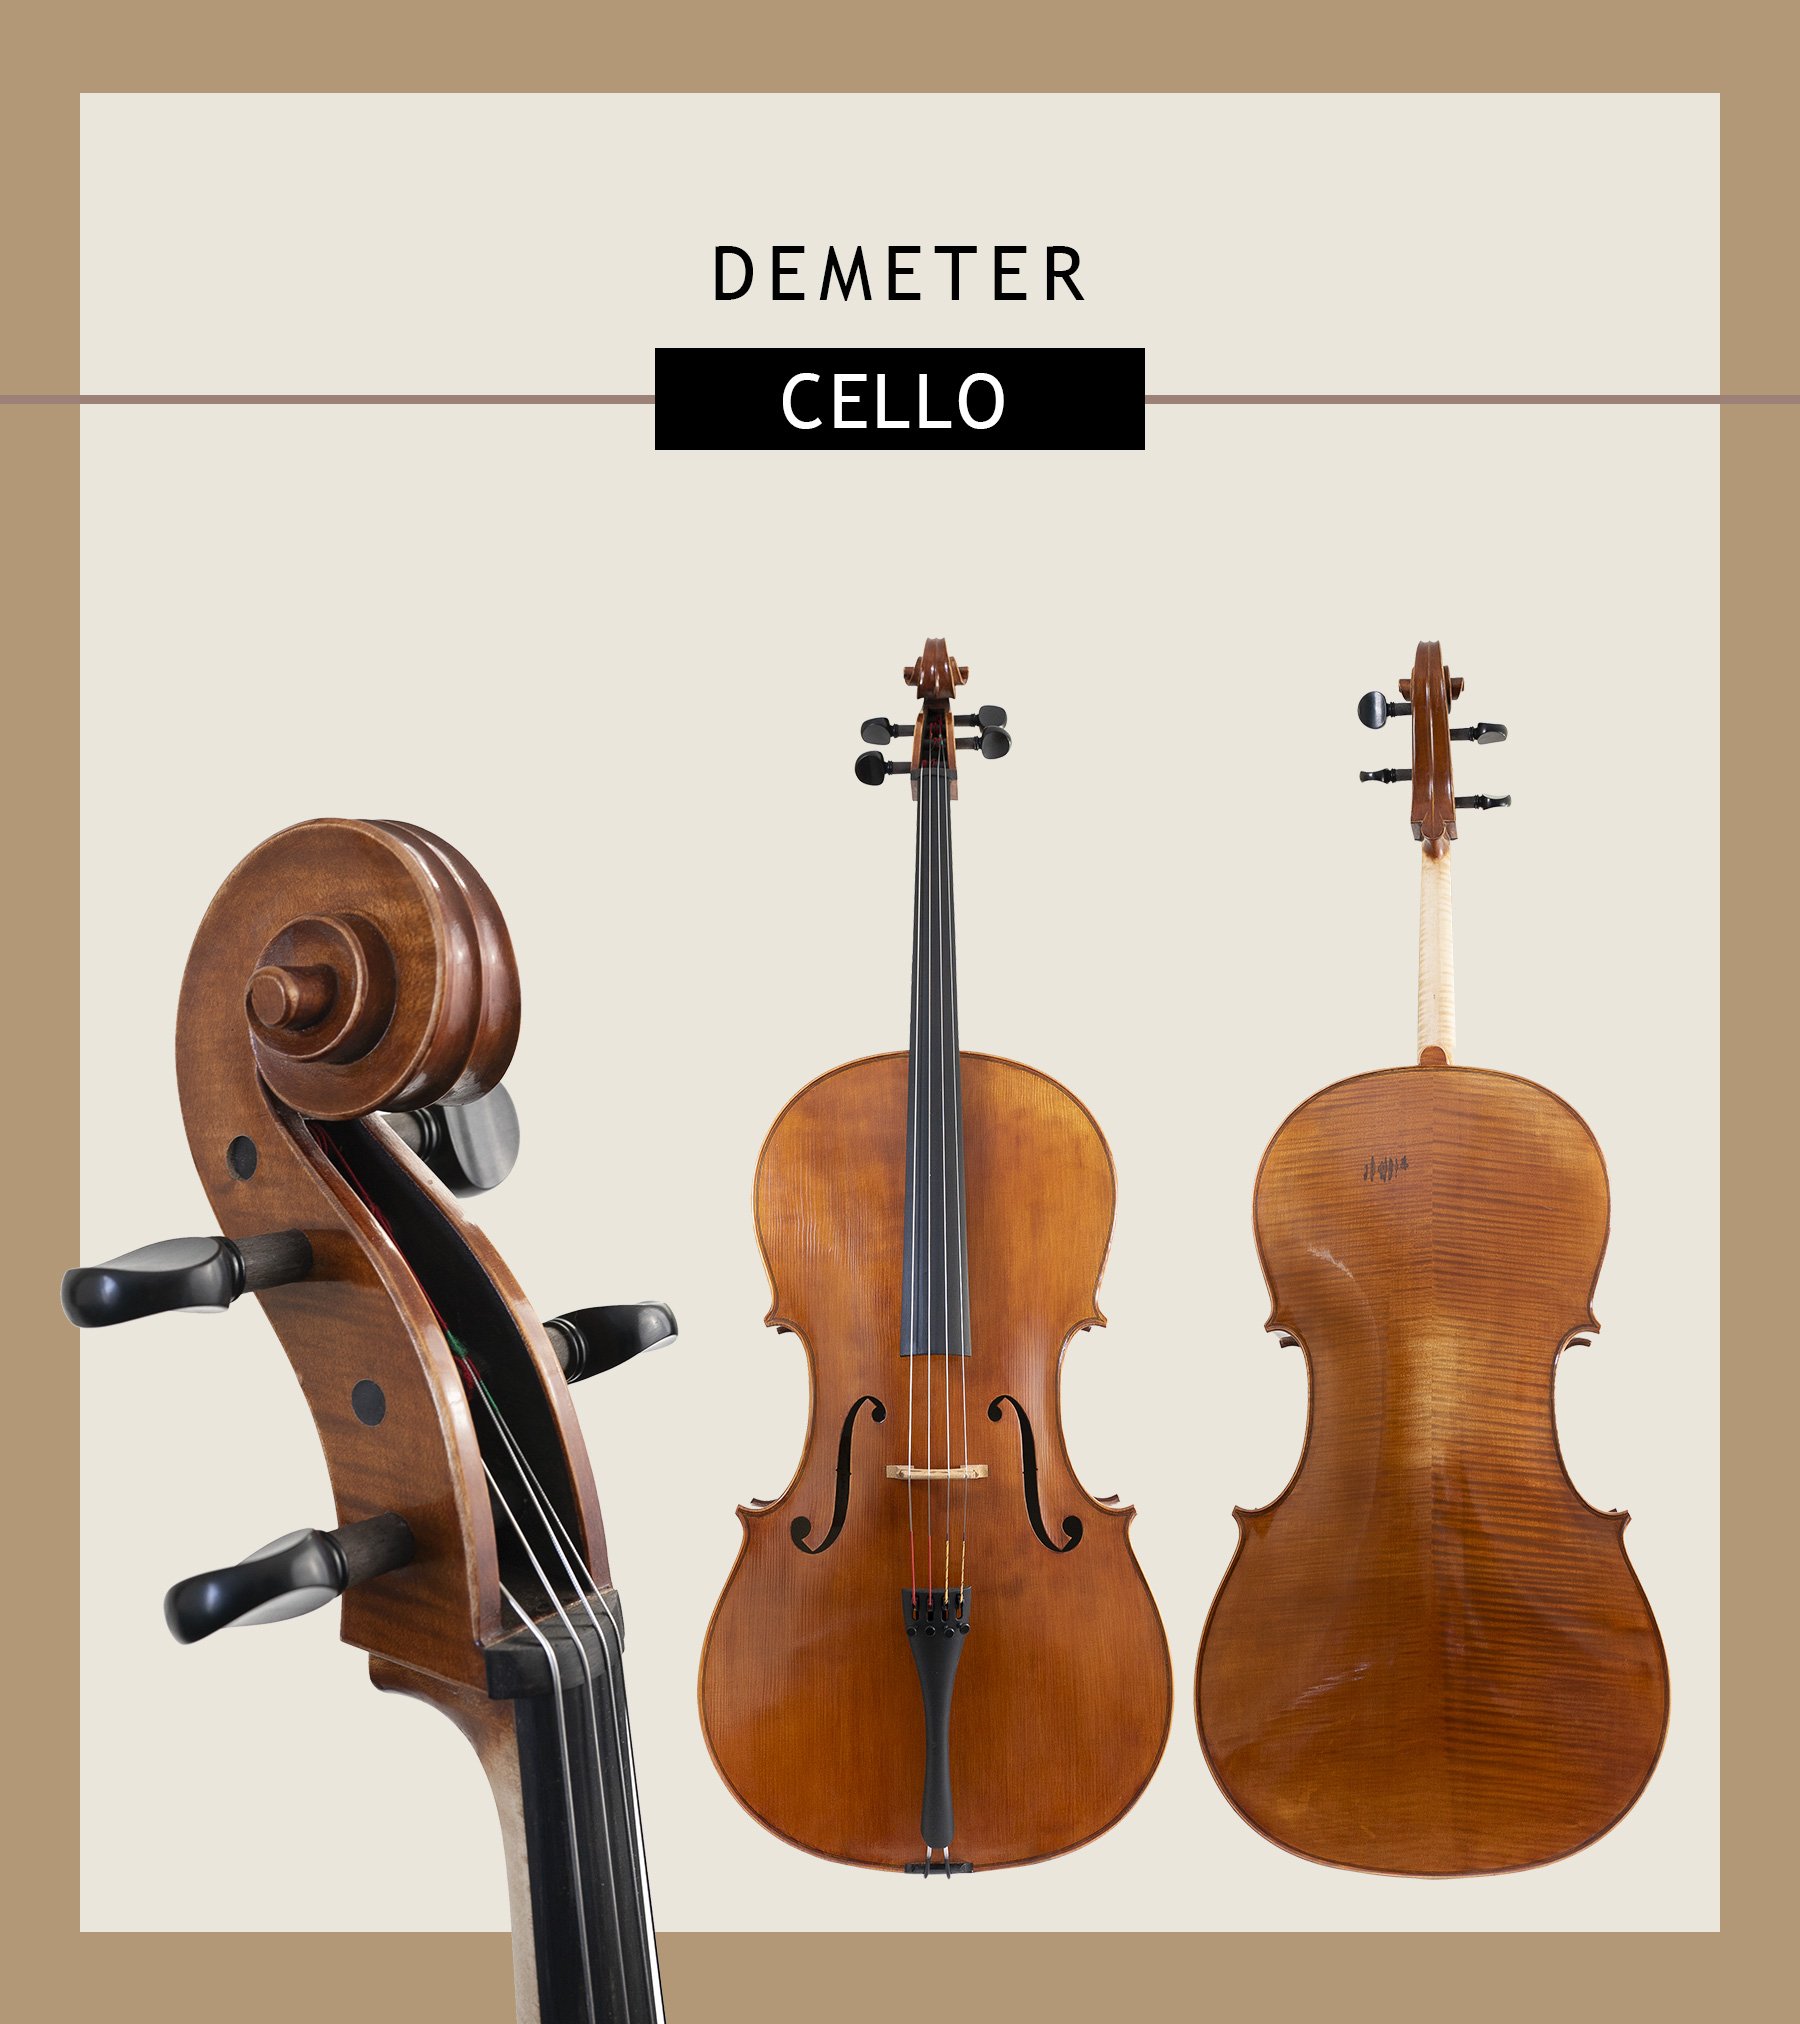 Demeter-Cello-Emailer.jpg